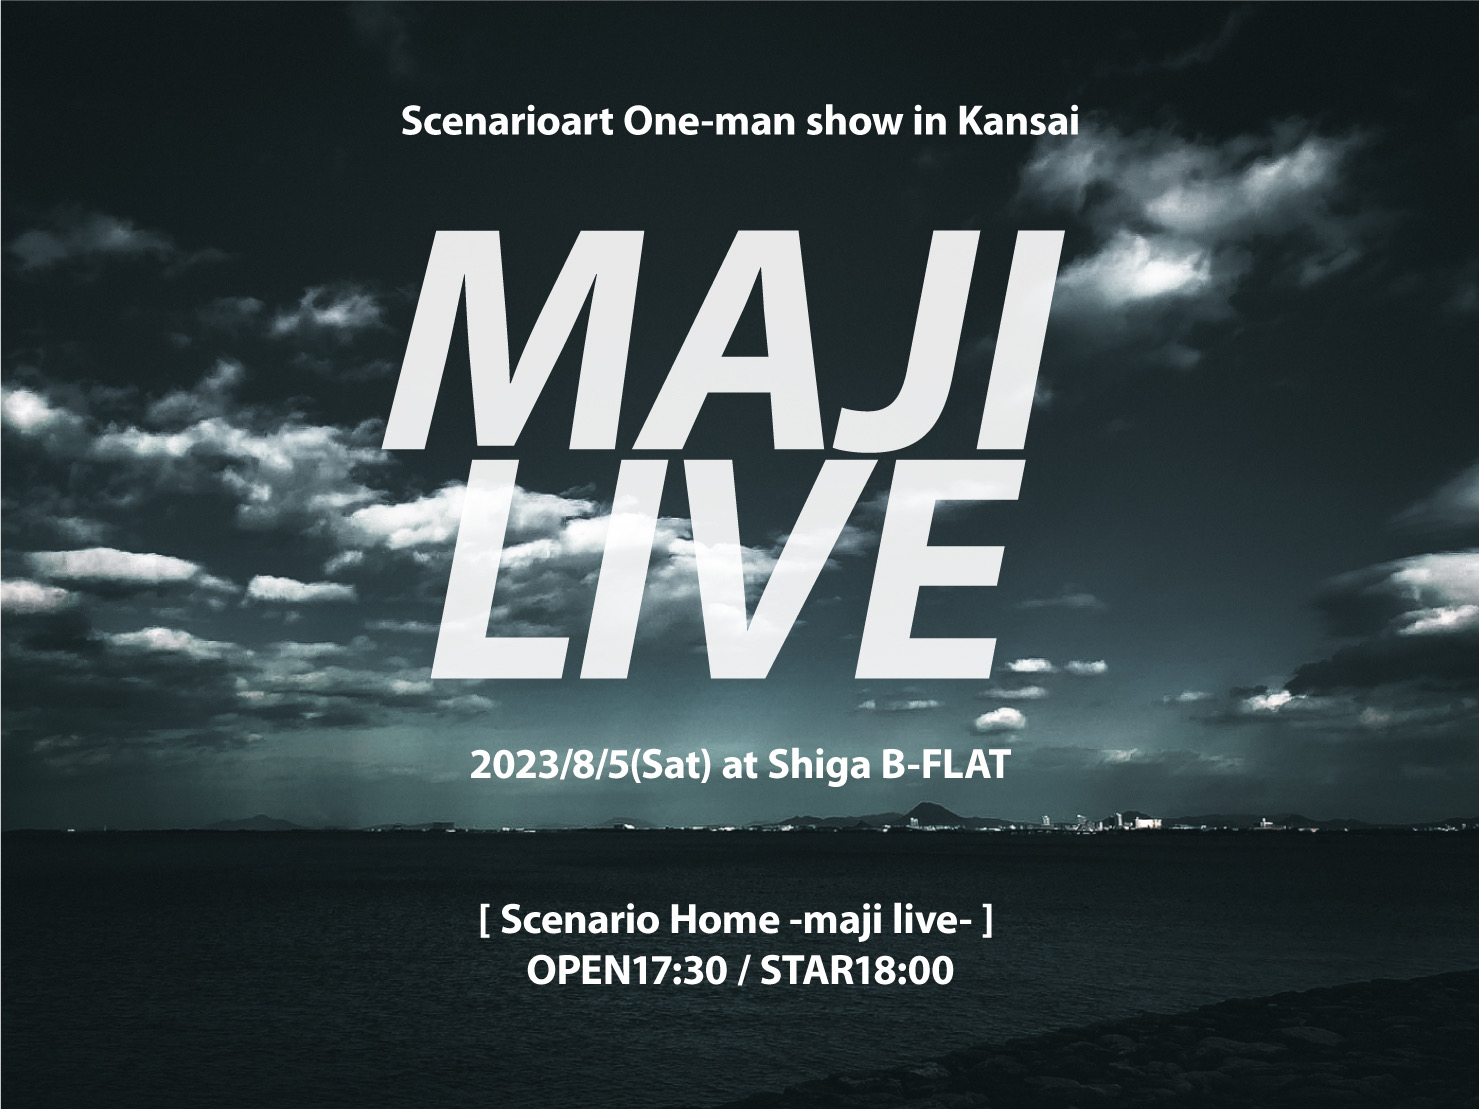 シナリオアート夜公演「Scenario Home -maji live-」